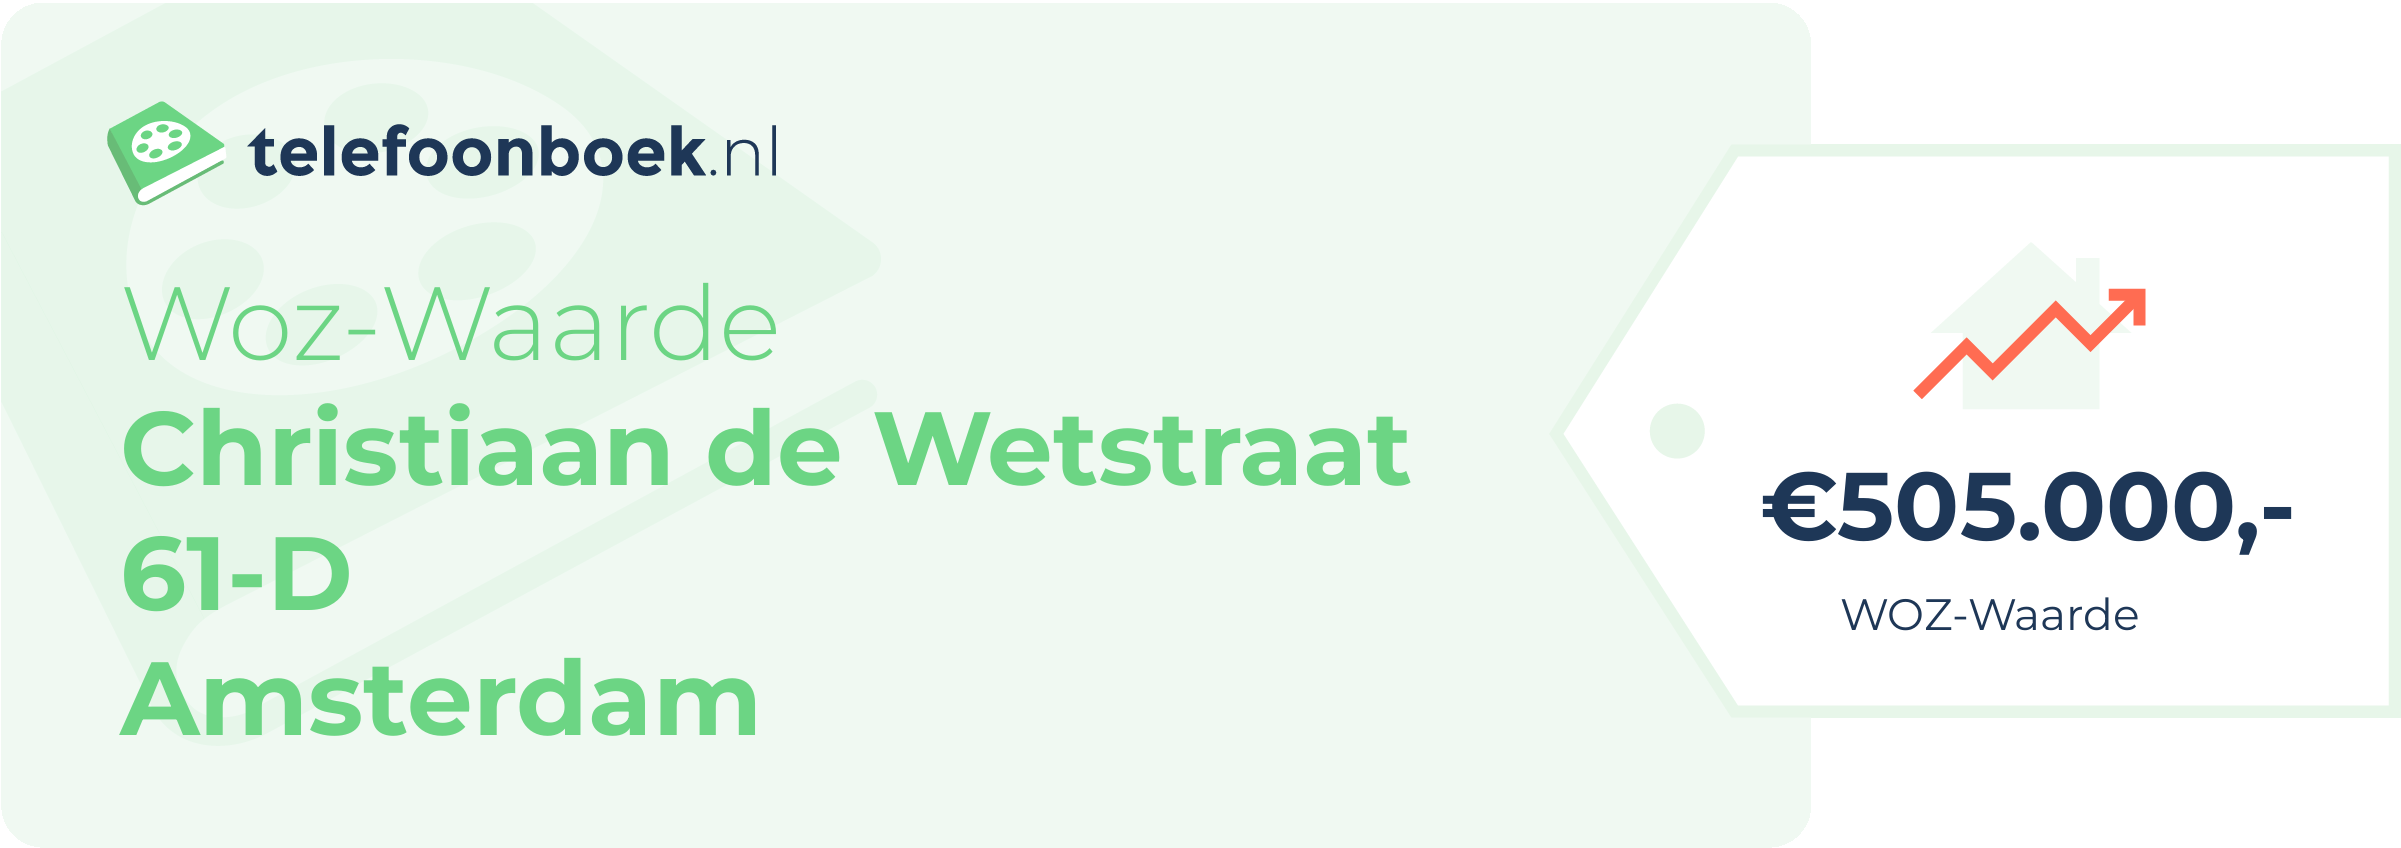 WOZ-waarde Christiaan De Wetstraat 61-D Amsterdam